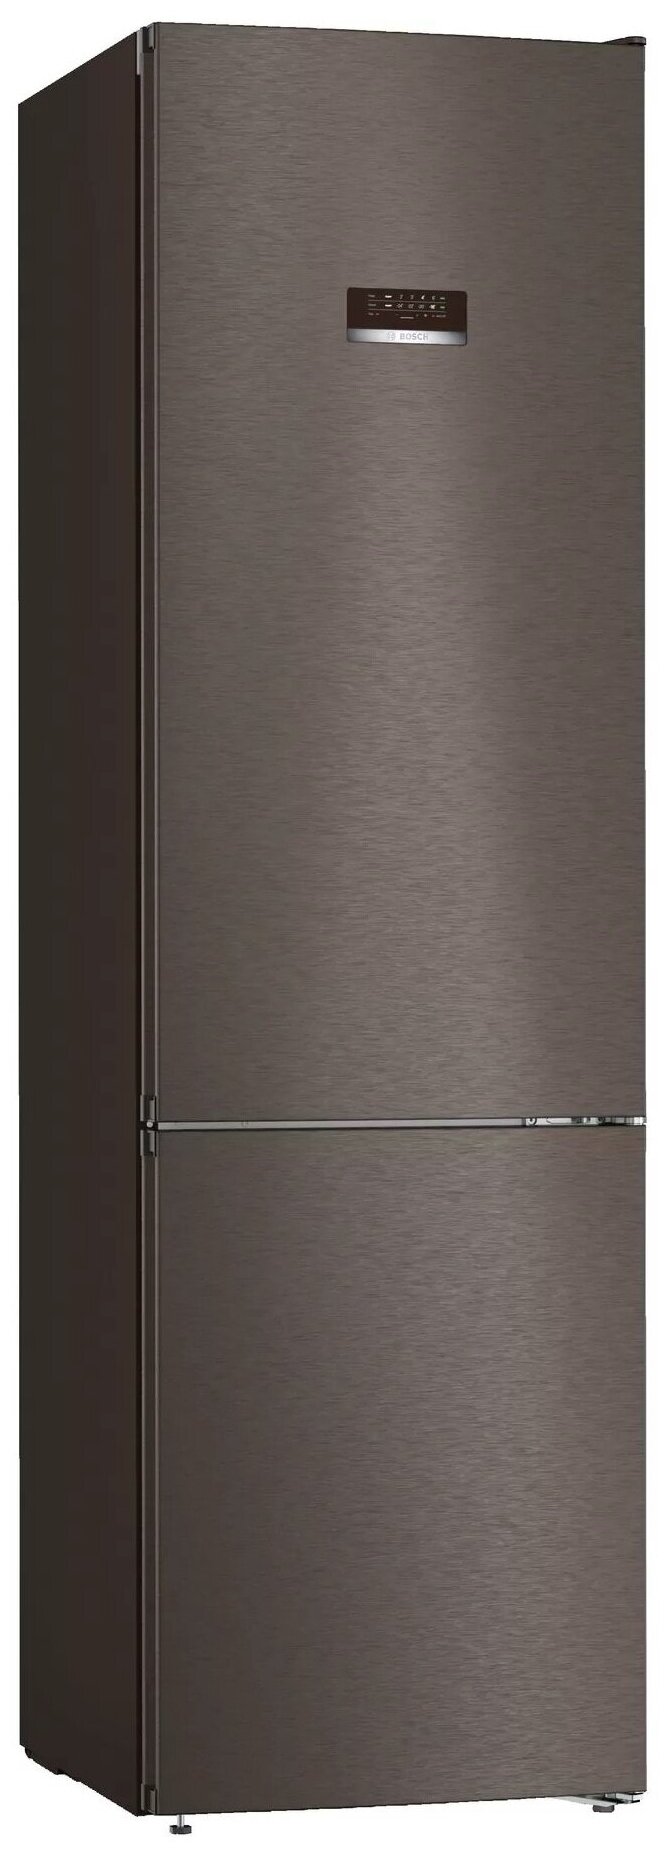 Холодильник Bosch KGN39XG20R нержавеющая сталь